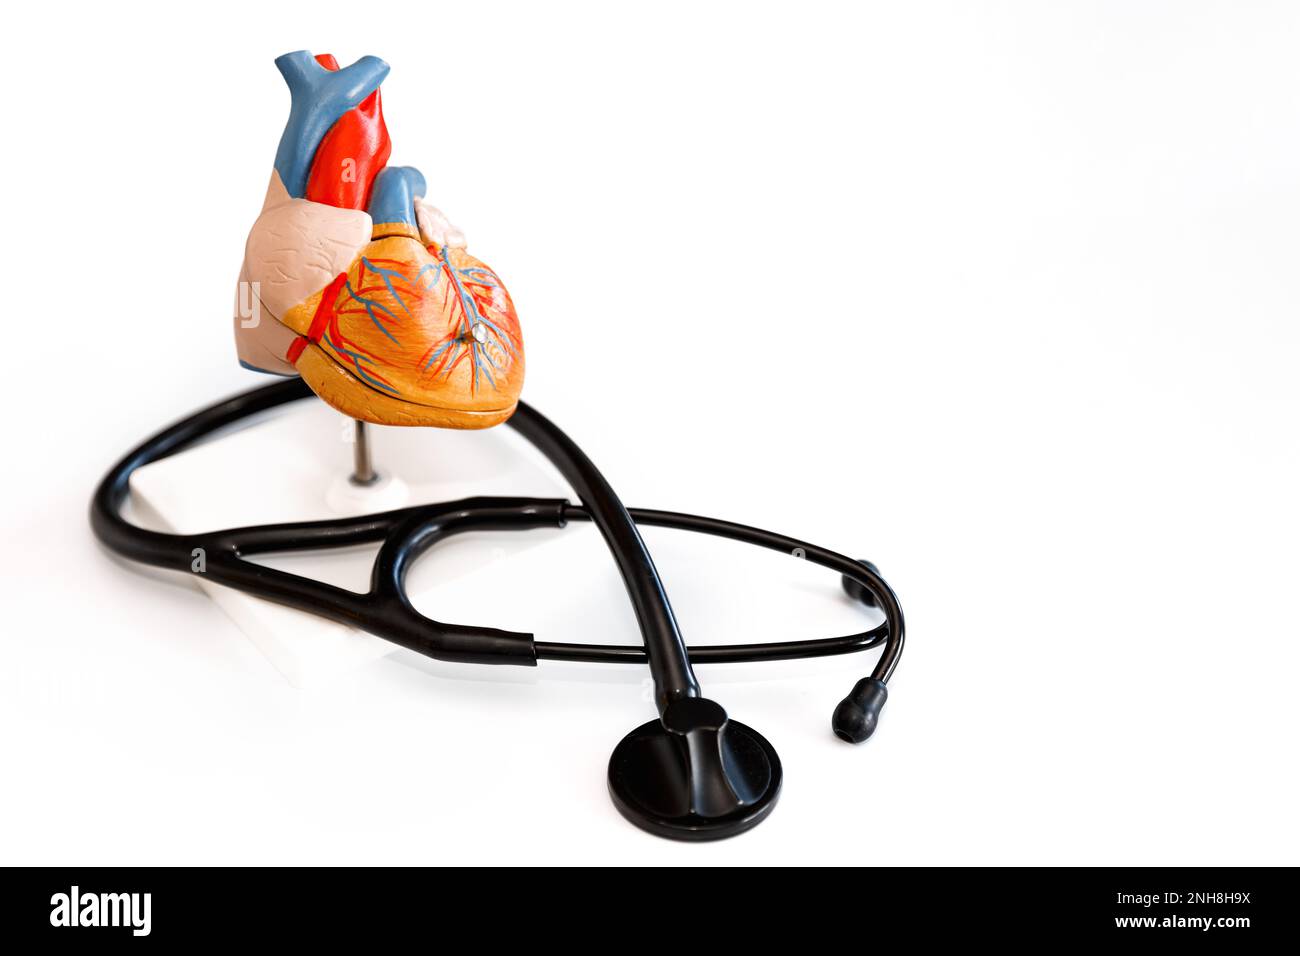 Modello anatomico del cuore umano nelle mani del medico. Consultazione cardiologica, trattamento delle malattie cardiache. Concetto medico Foto Stock